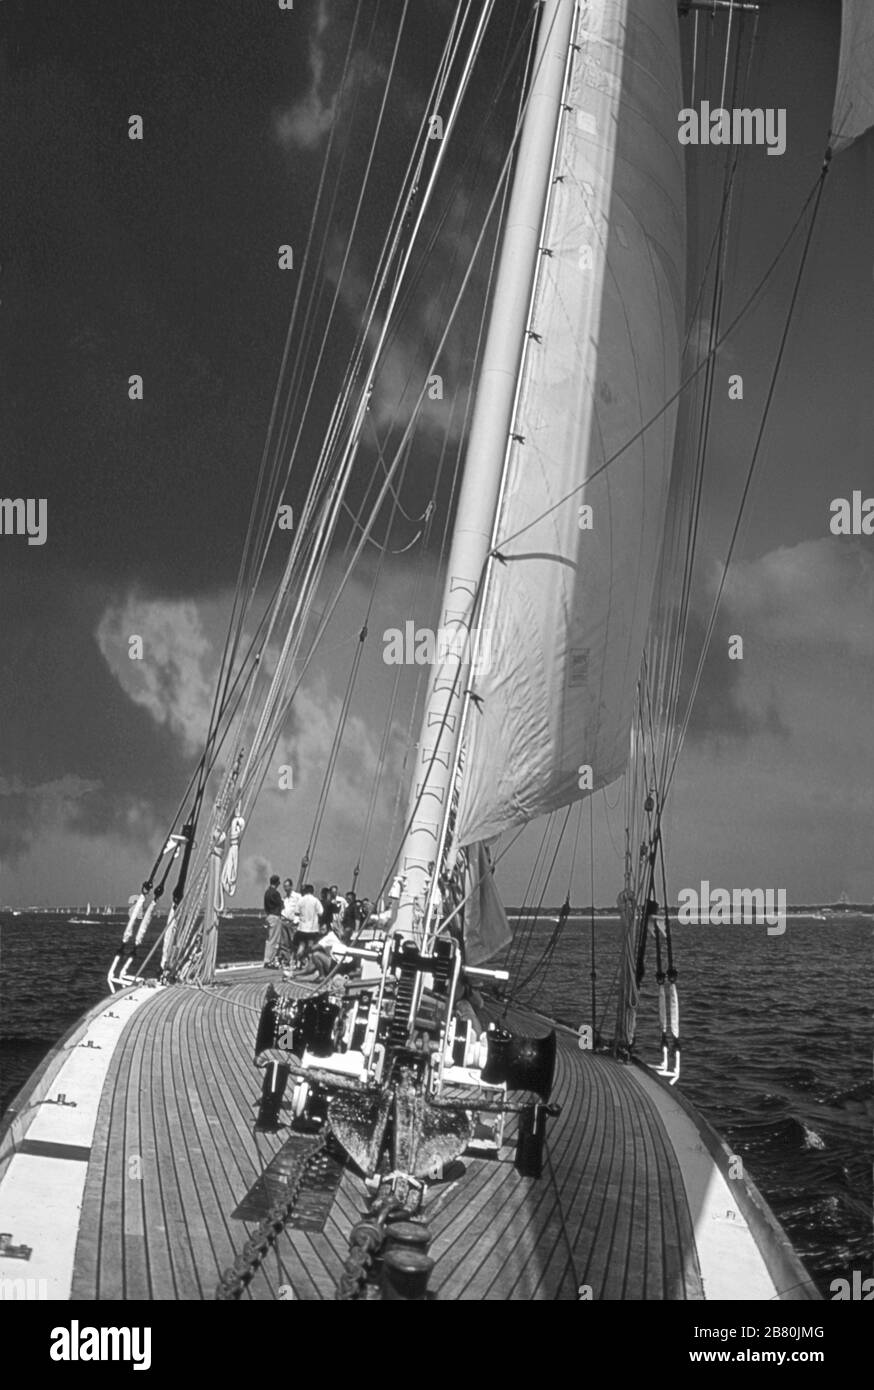 Le pont qui s'est tourné vers l'arrière des arcs du yacht J Class 'Velsheda' après la première repose, naviguant dans le Solent, Hampshire, Angleterre, Royaume-Uni, été 1991. Archiver la photographie de film noir et blanc Banque D'Images